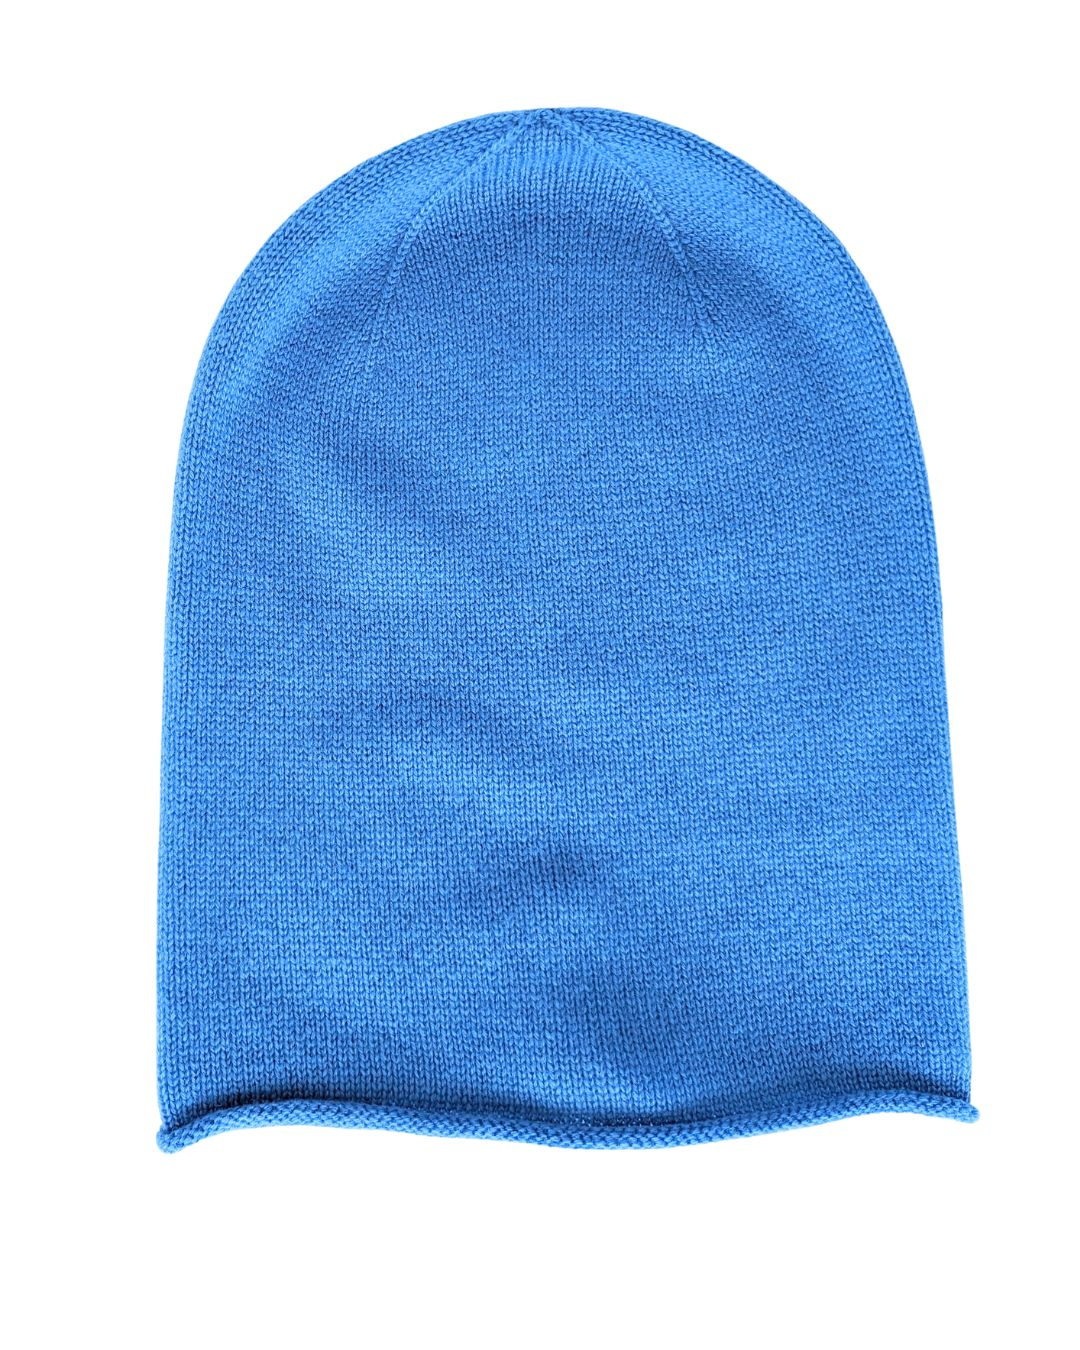 blue cashmere hat